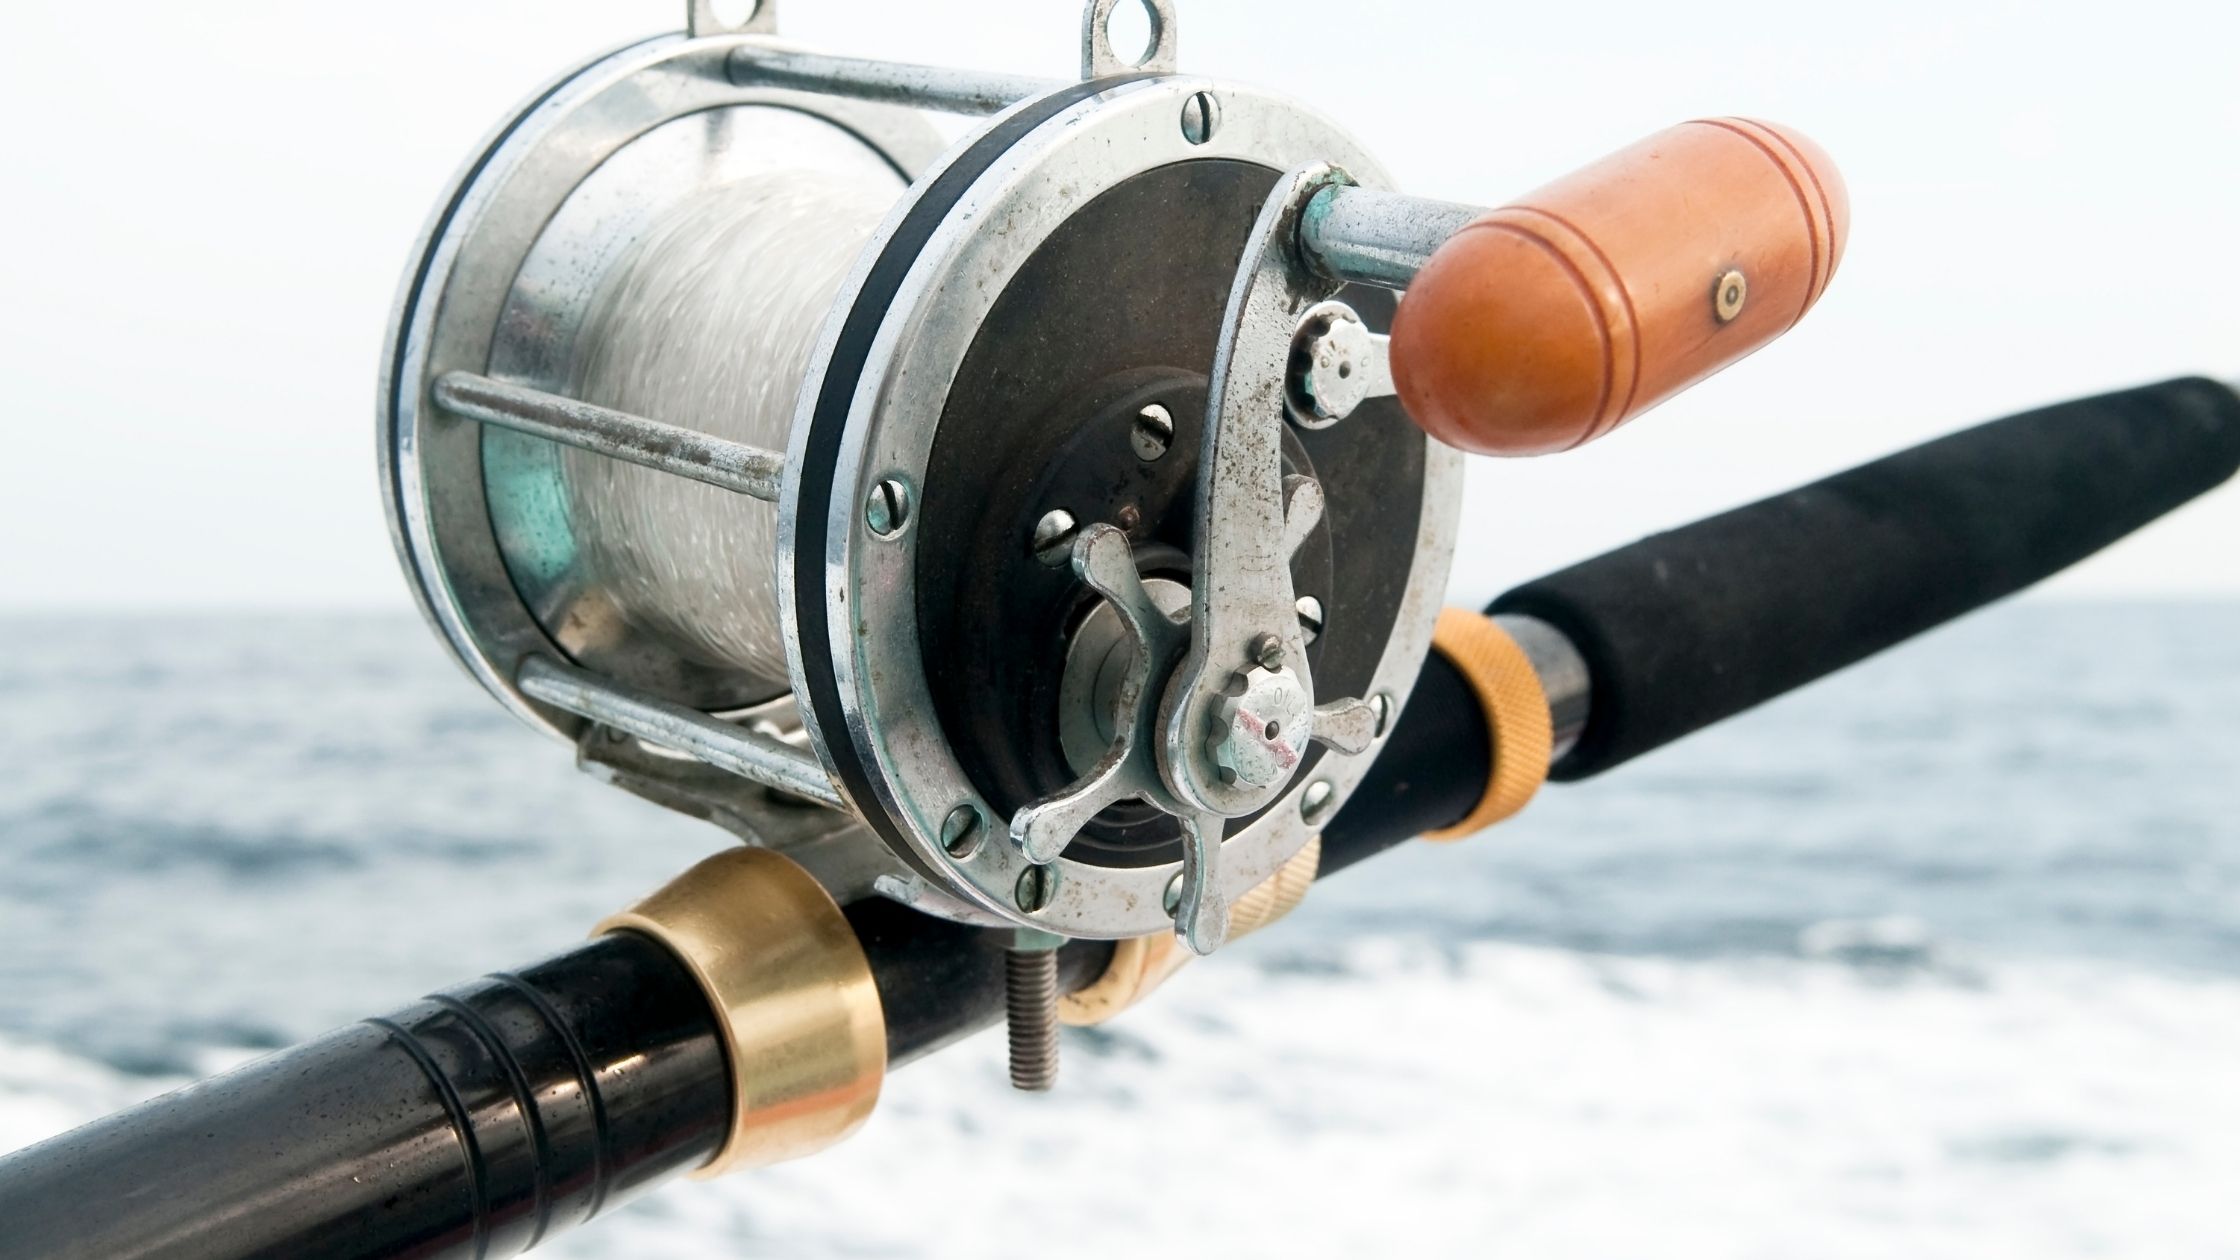 Typesof fishing reels: Saltwater Fishing Reels vs. Freshwater